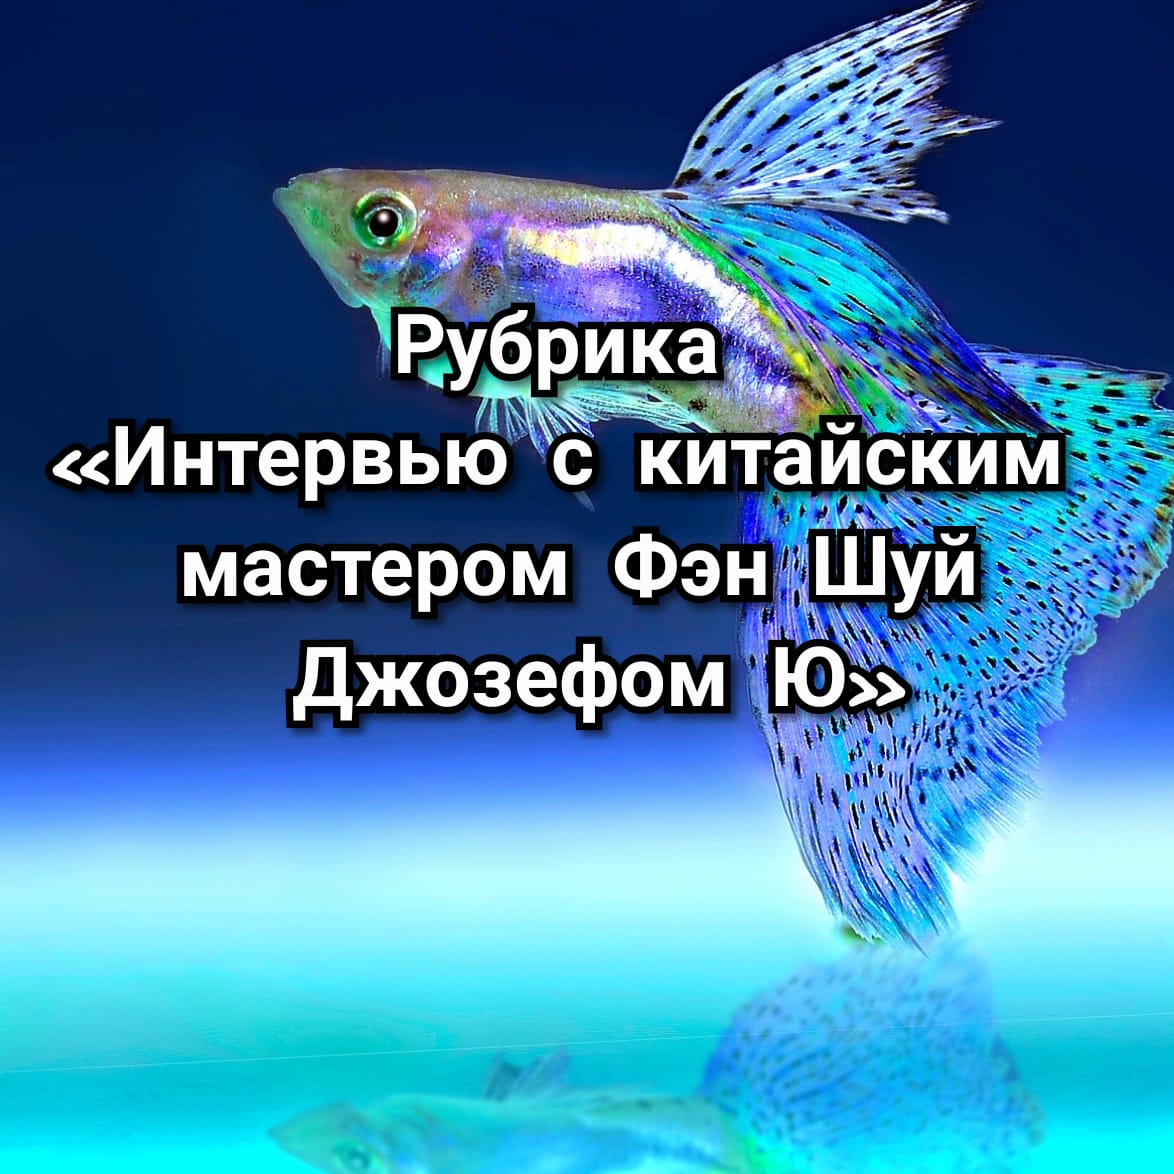 Рыбка в аквариуме - Интервью с Мастером Джозефом Ю - Fengshuimaster.Ru